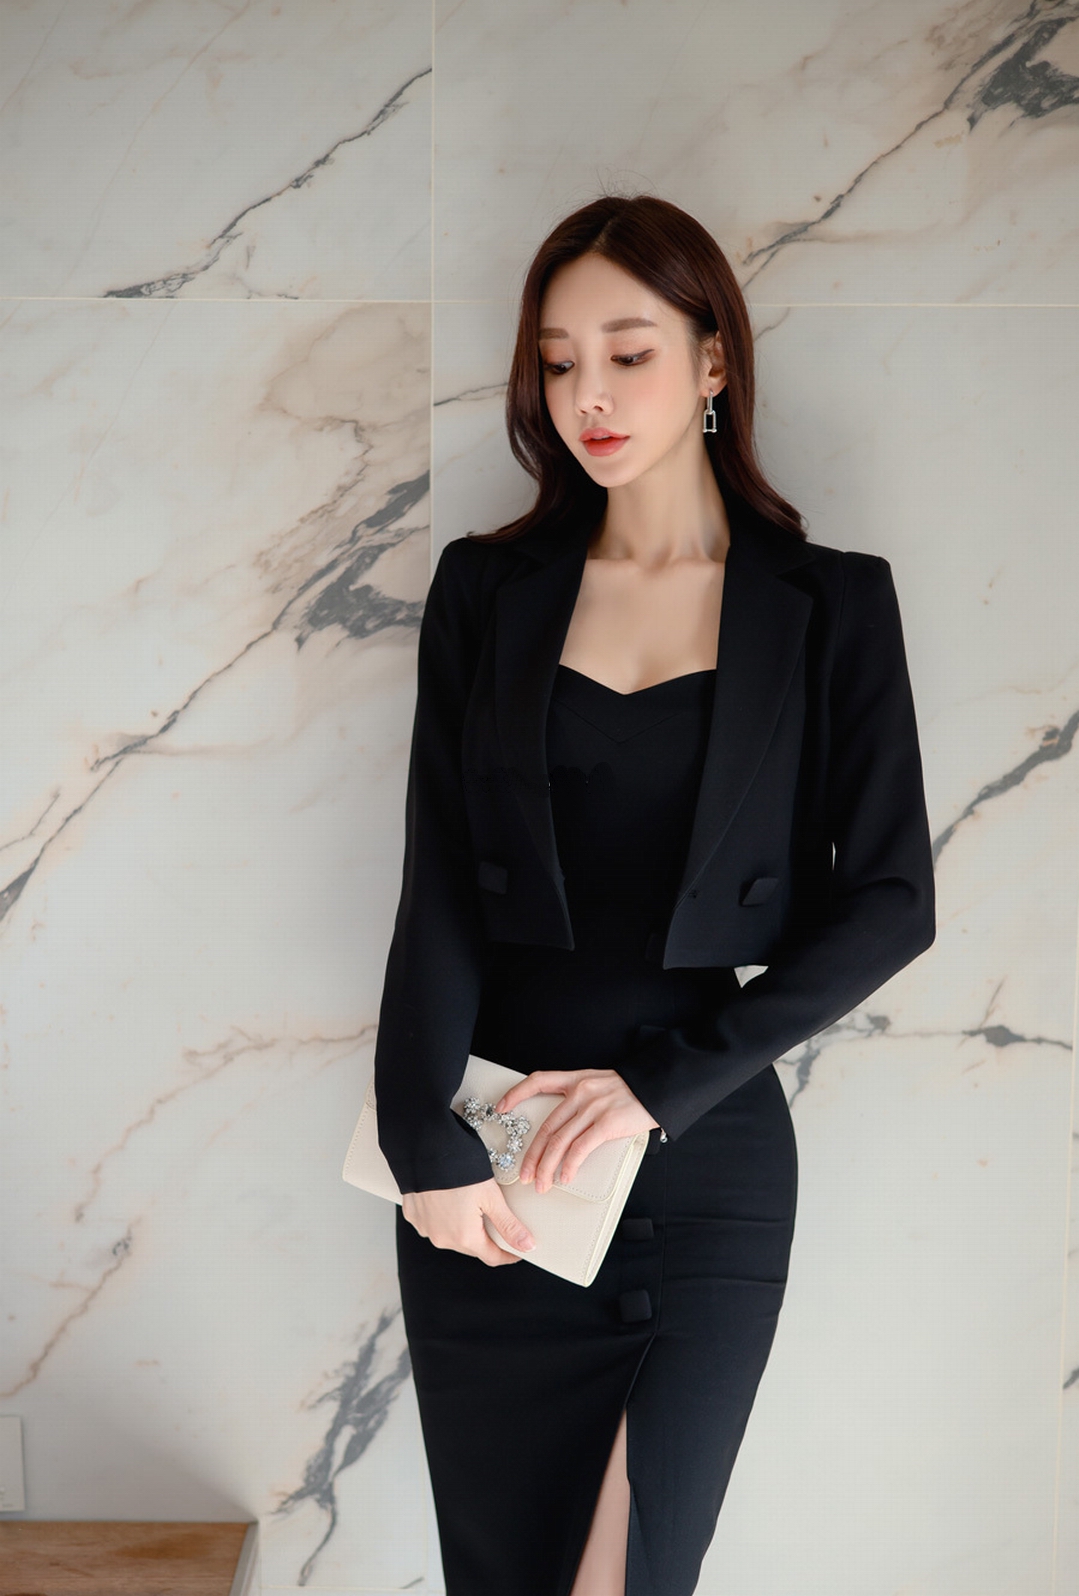 首发韩国女神孙允珠日常穿搭:黑色精裁短款西装夹克